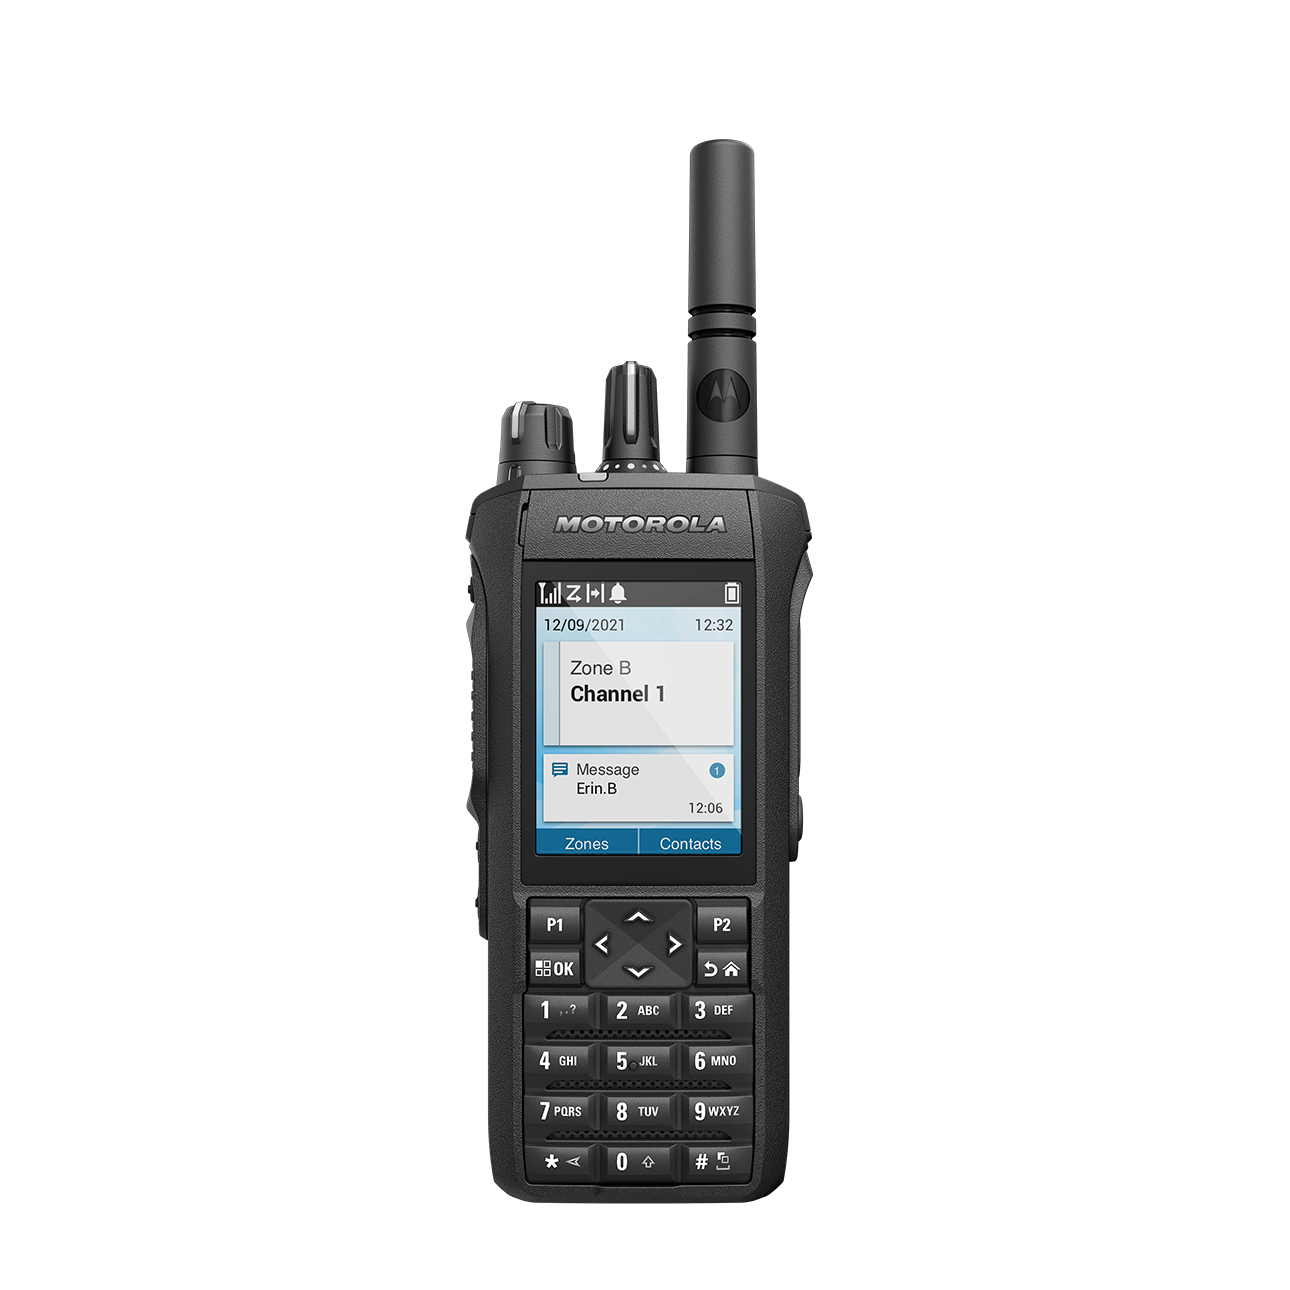 MOTOTRBO R7 — Next-Gen Portable Digital Two-Way Radios - Motorola 